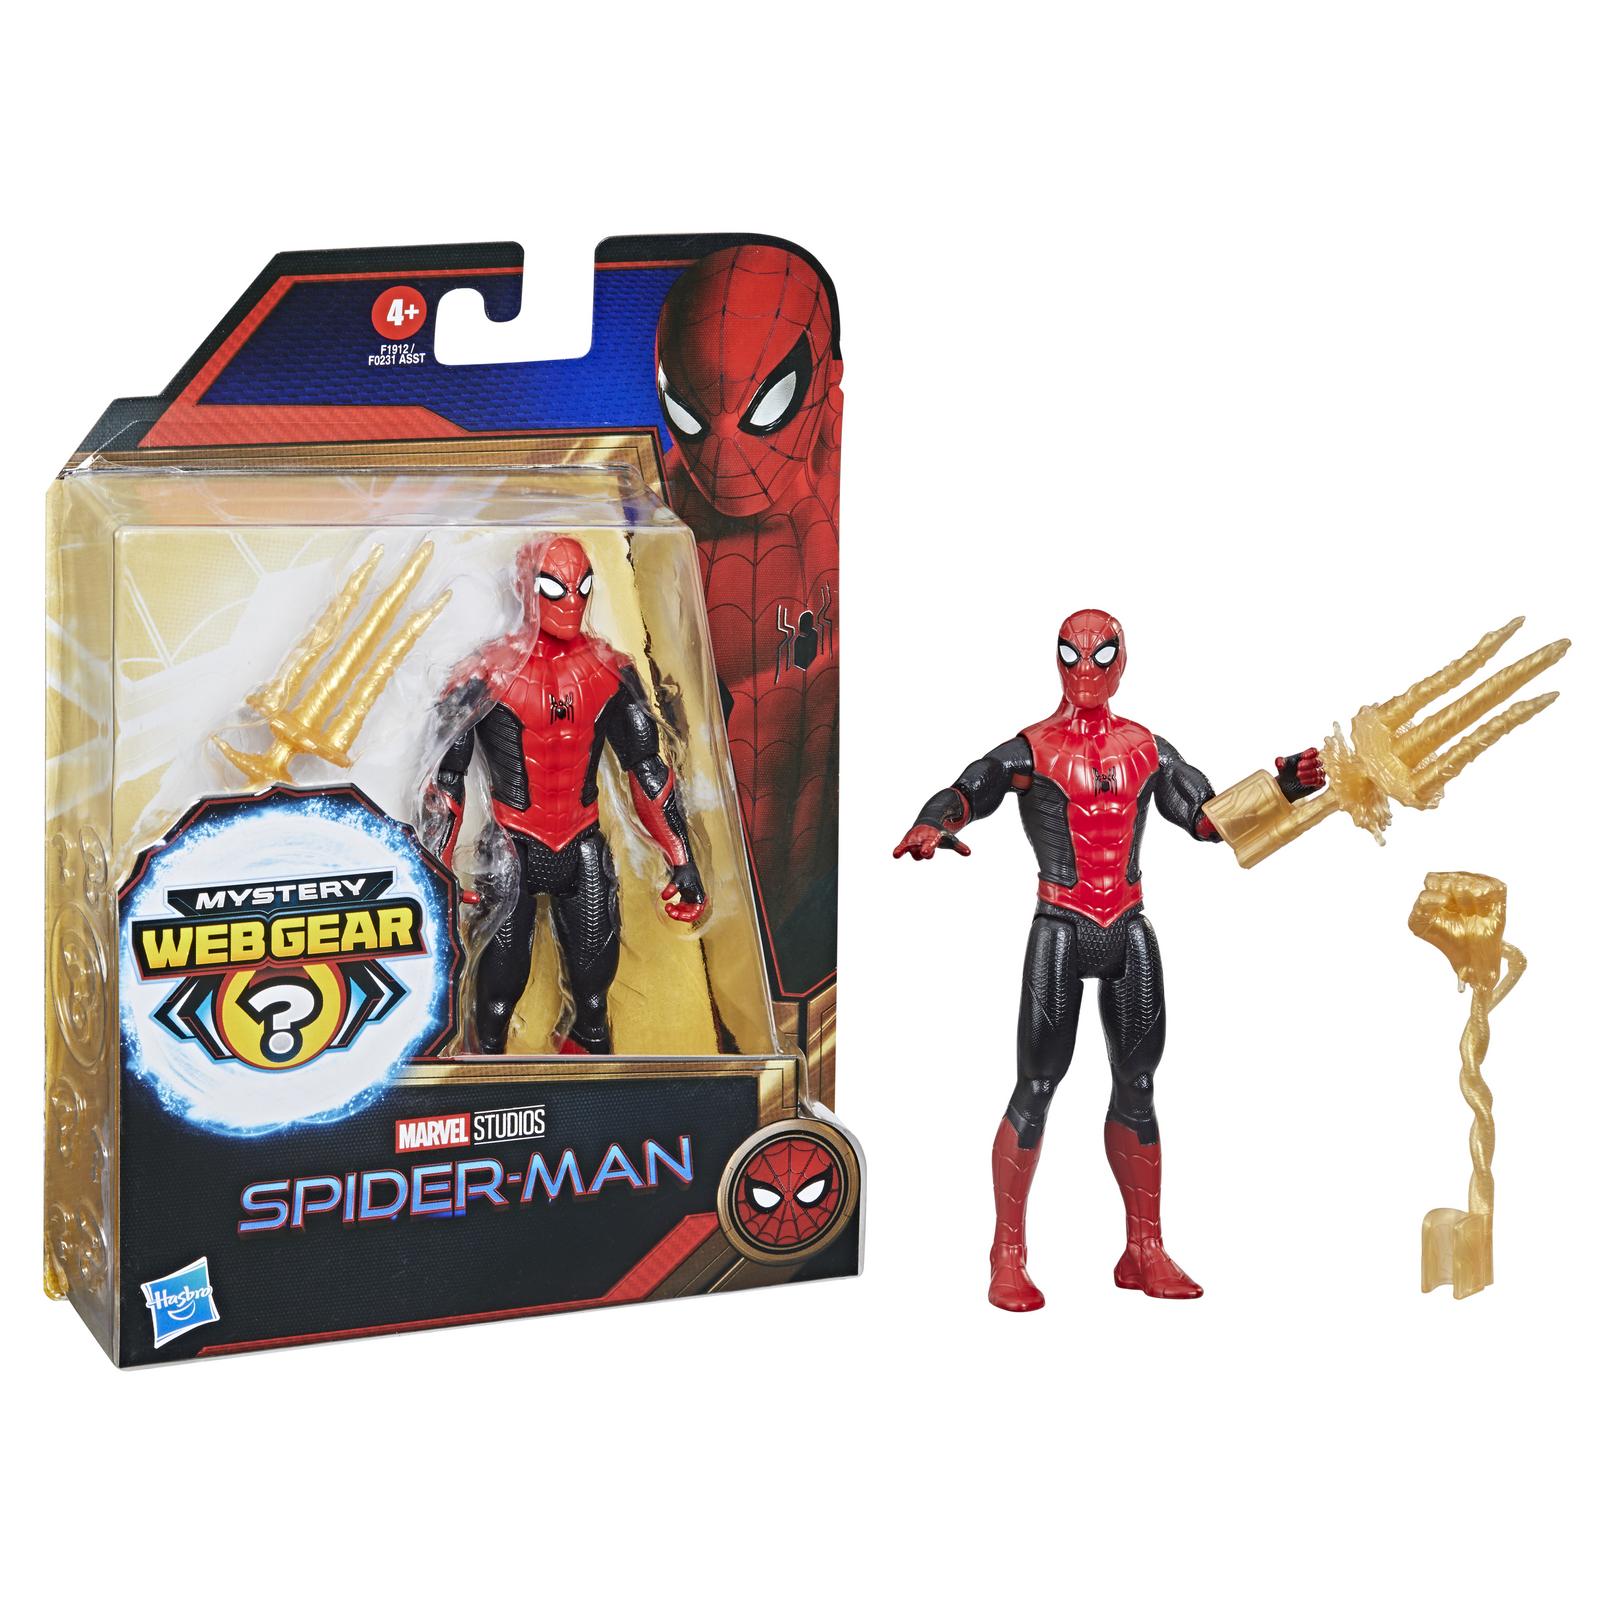 Фигурка Человек-Паук (Spider-man) Человек-паук Пионер с дополнительным элементом и аксессуаром F19125X0 - фото 4